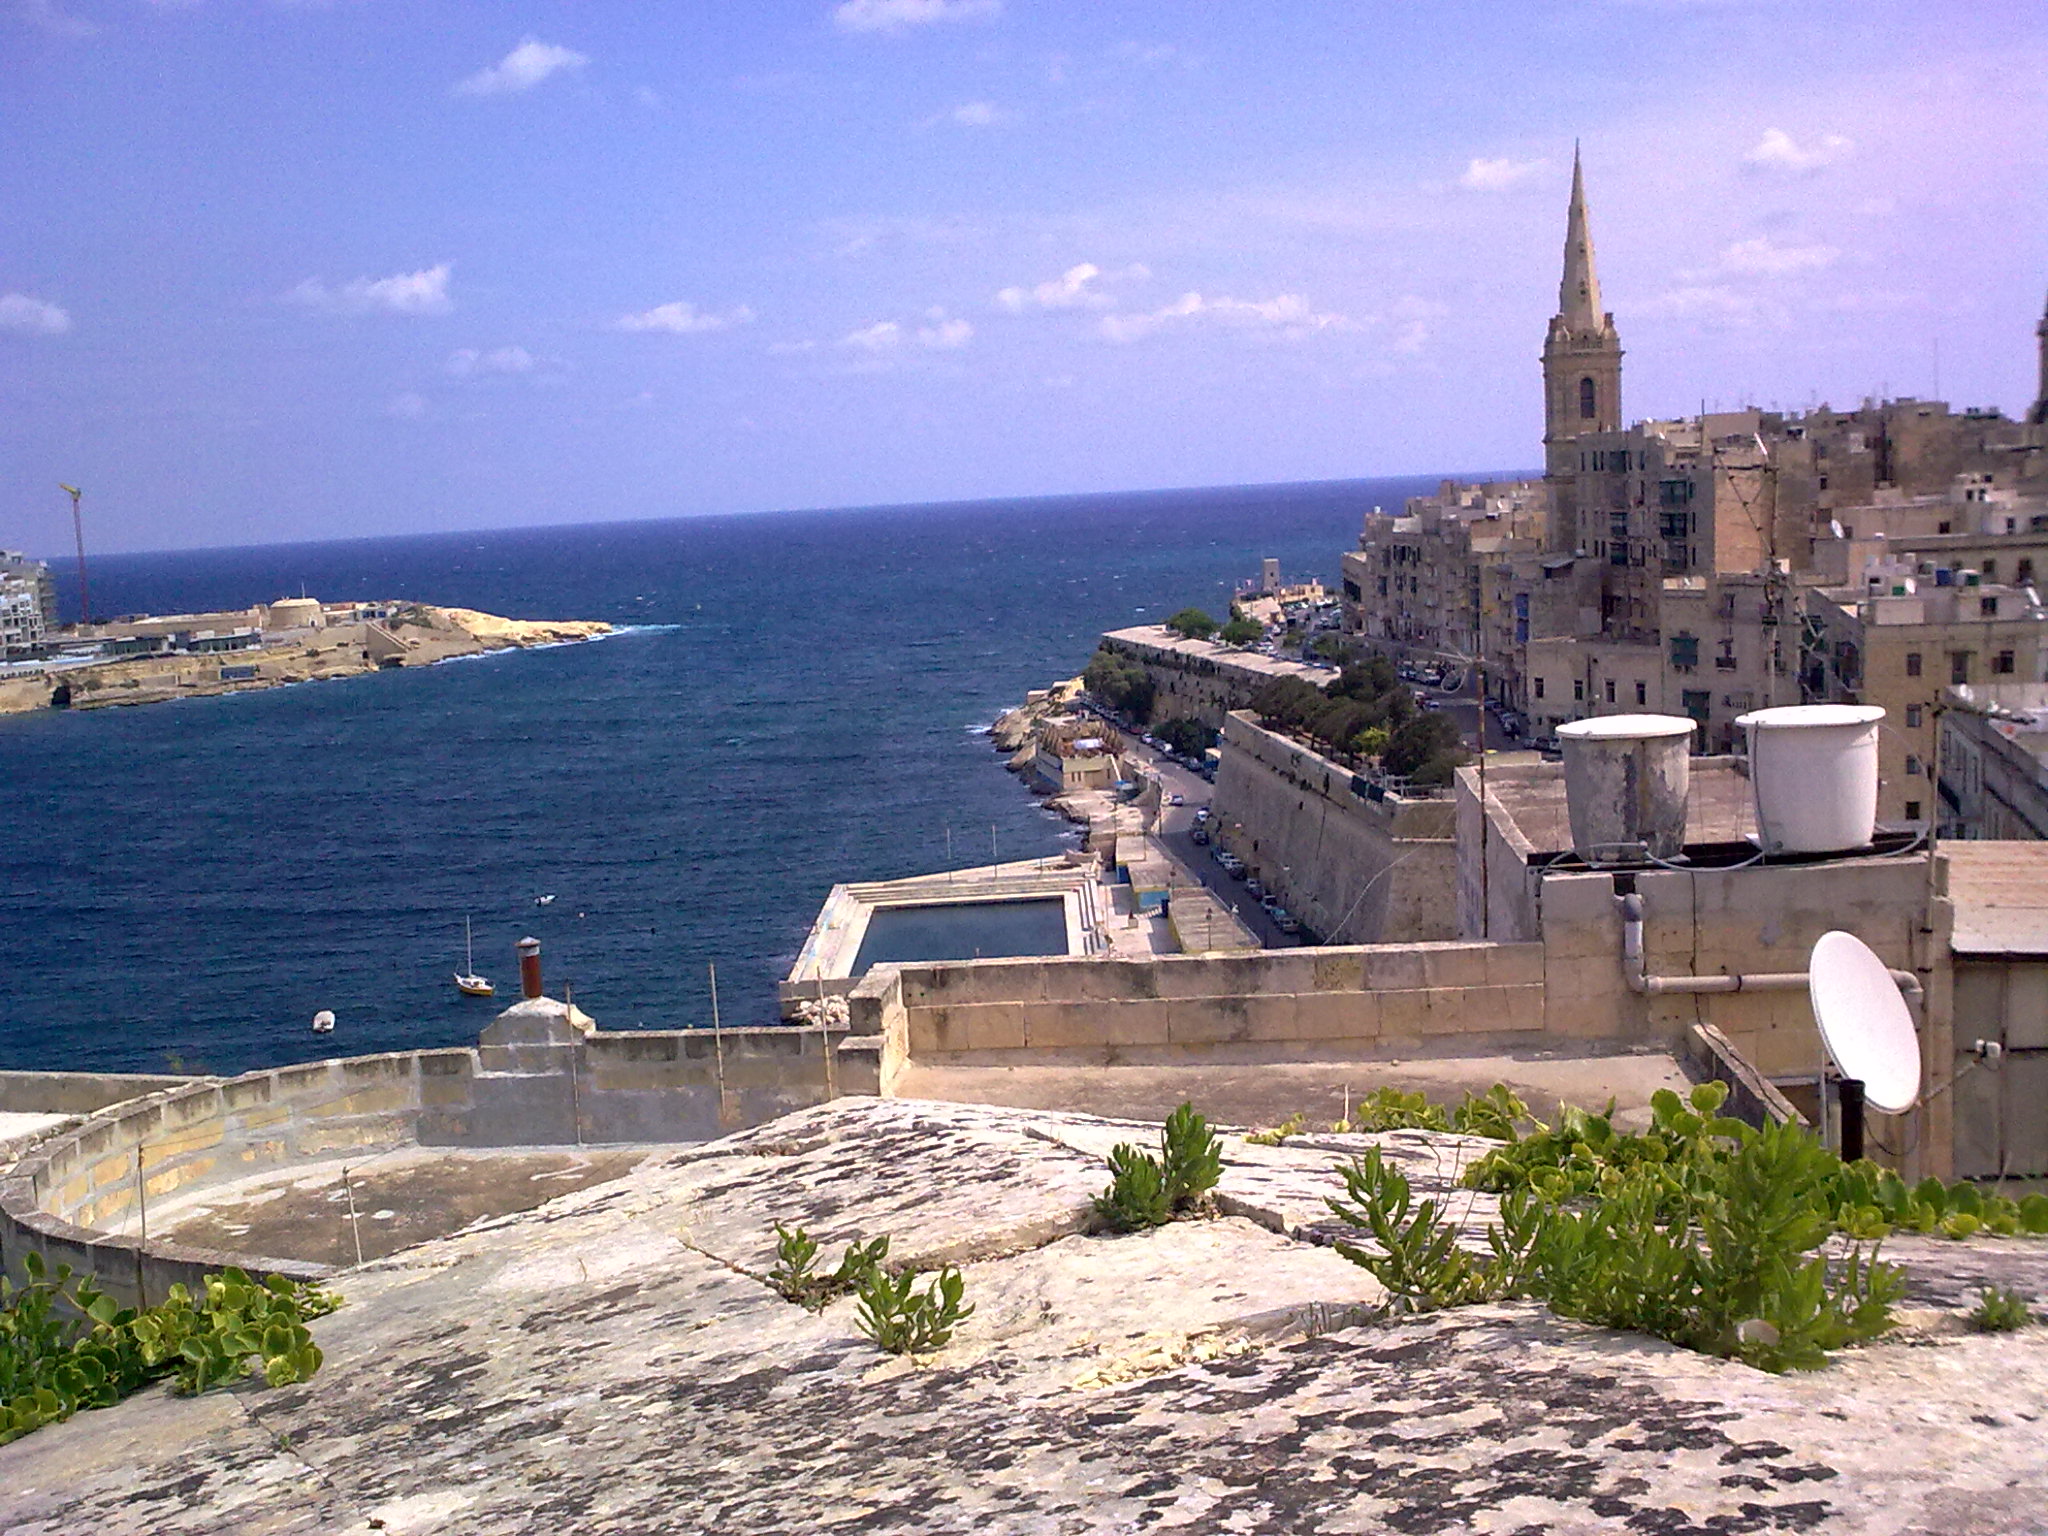 Malta Coastal walk: Valletta